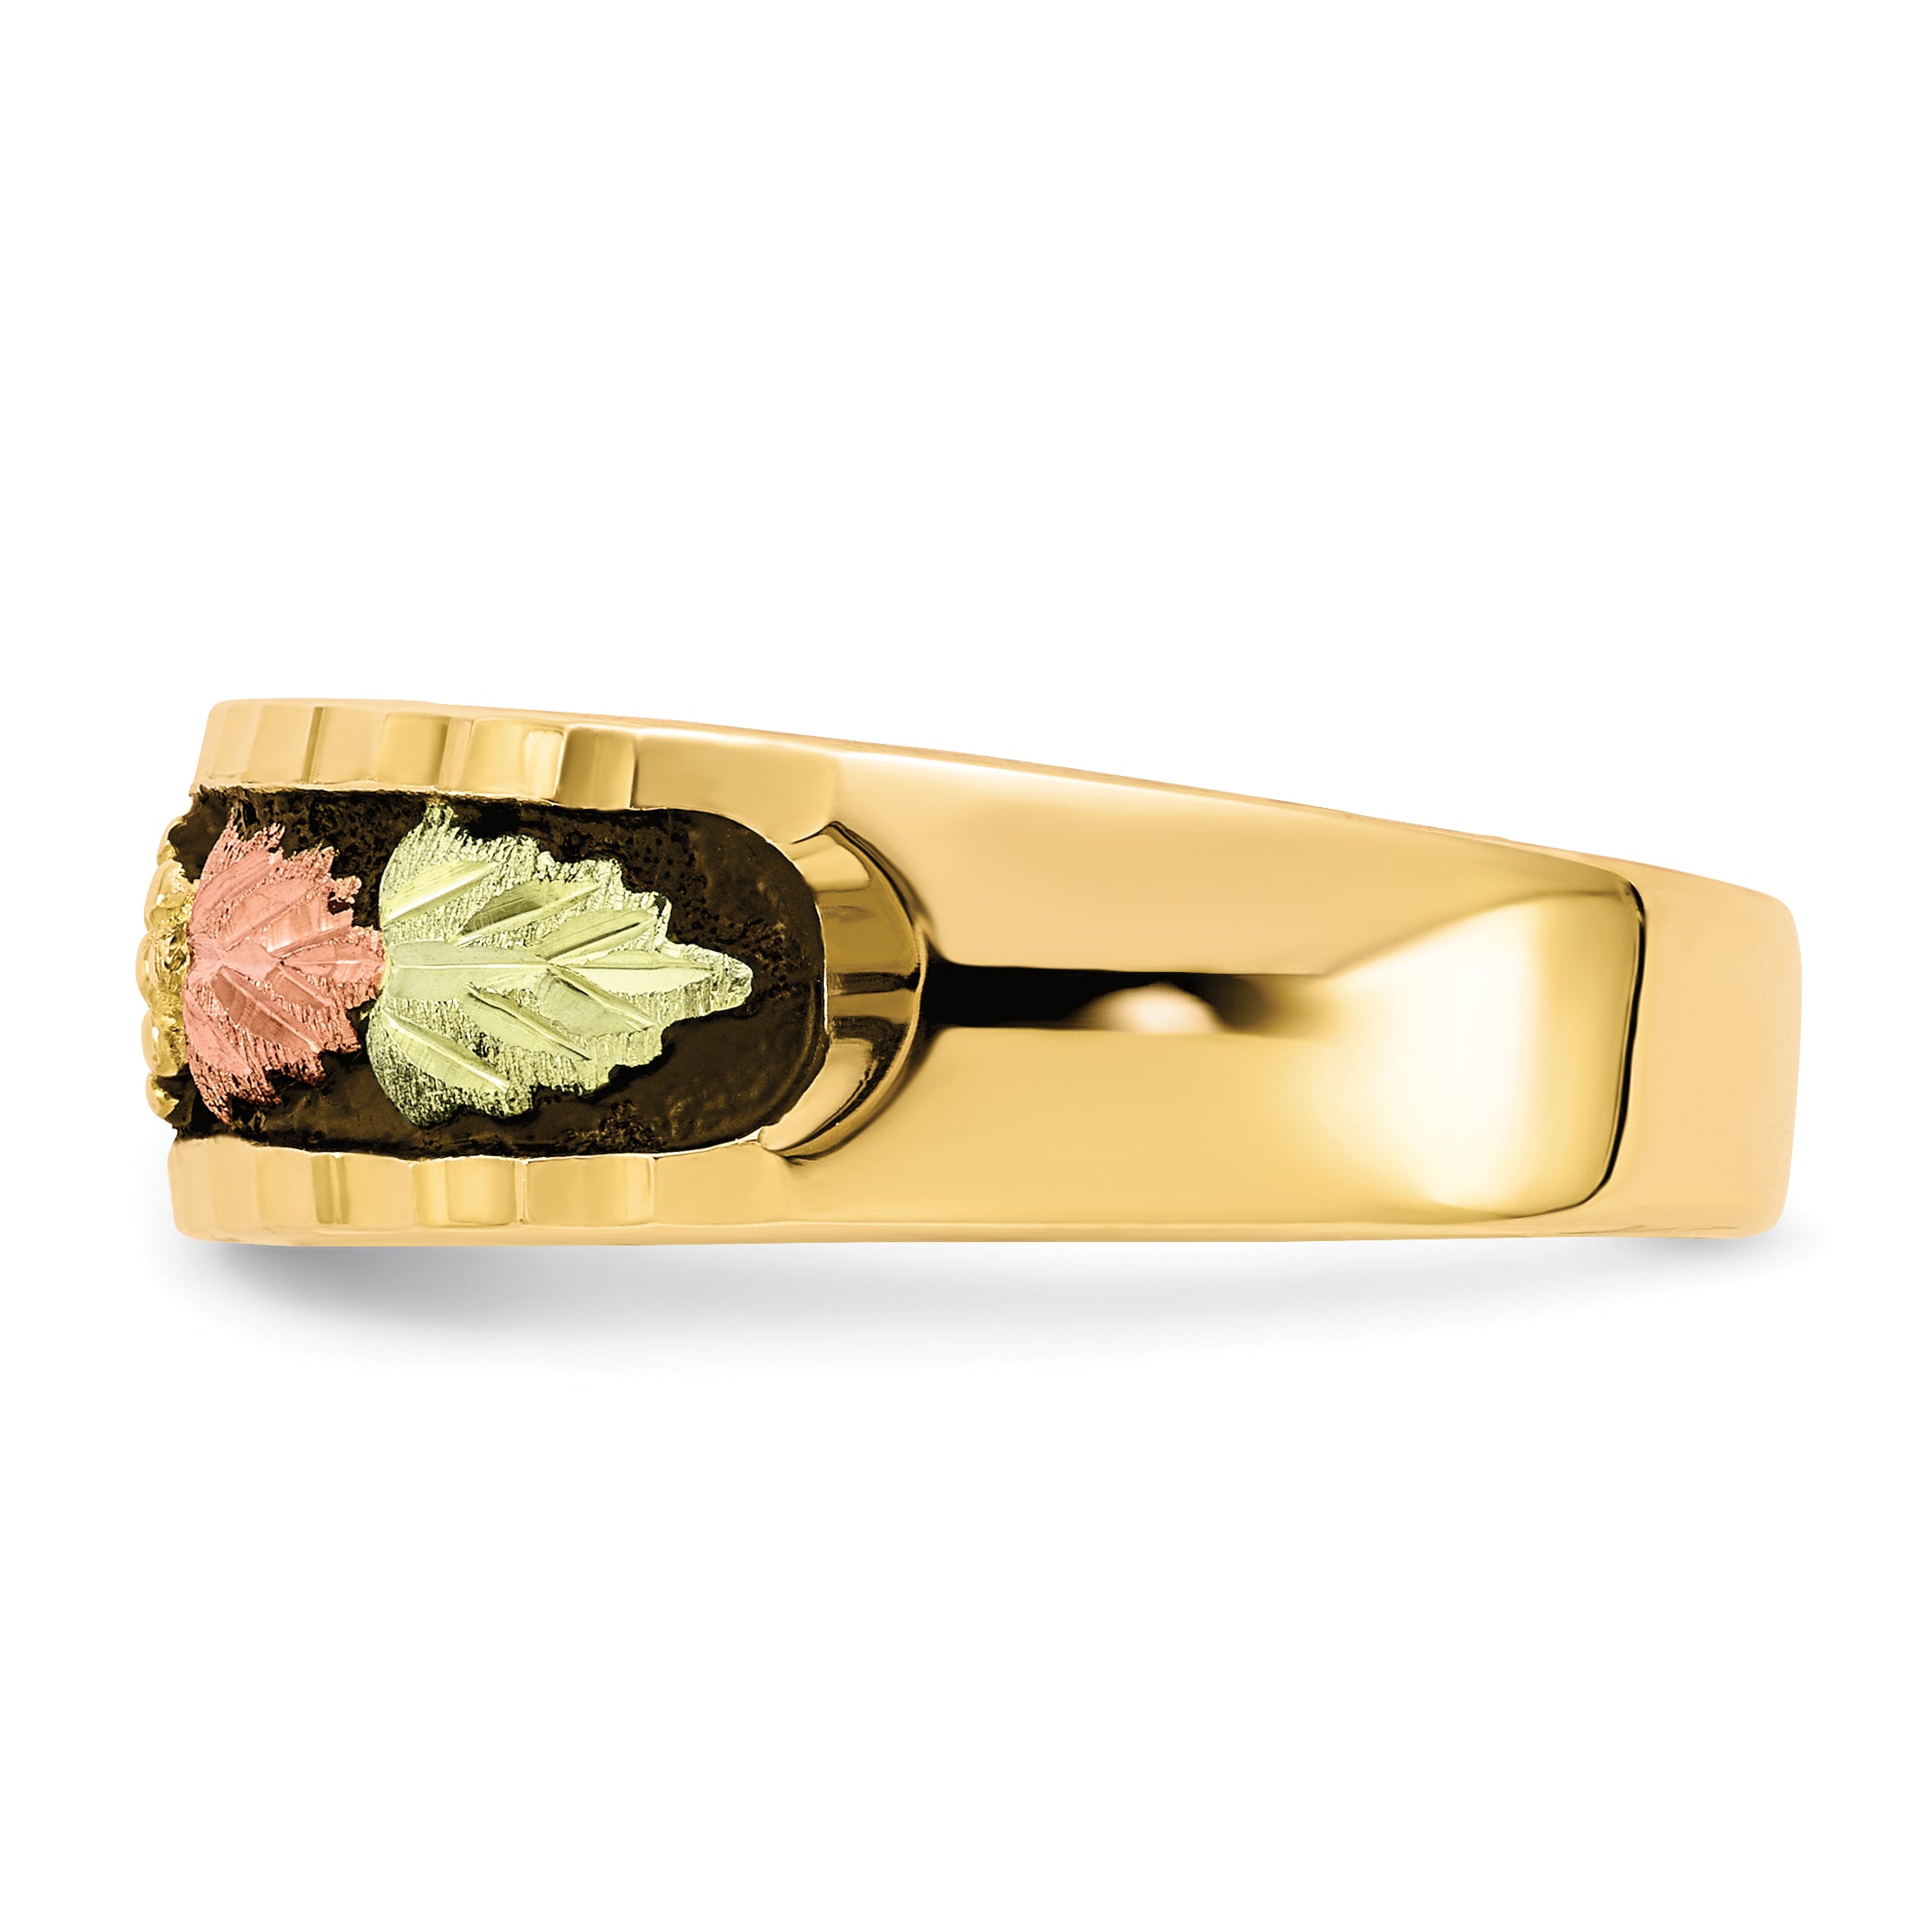 10k Tri-color Black Hills Gold Men's Antiqued Ring